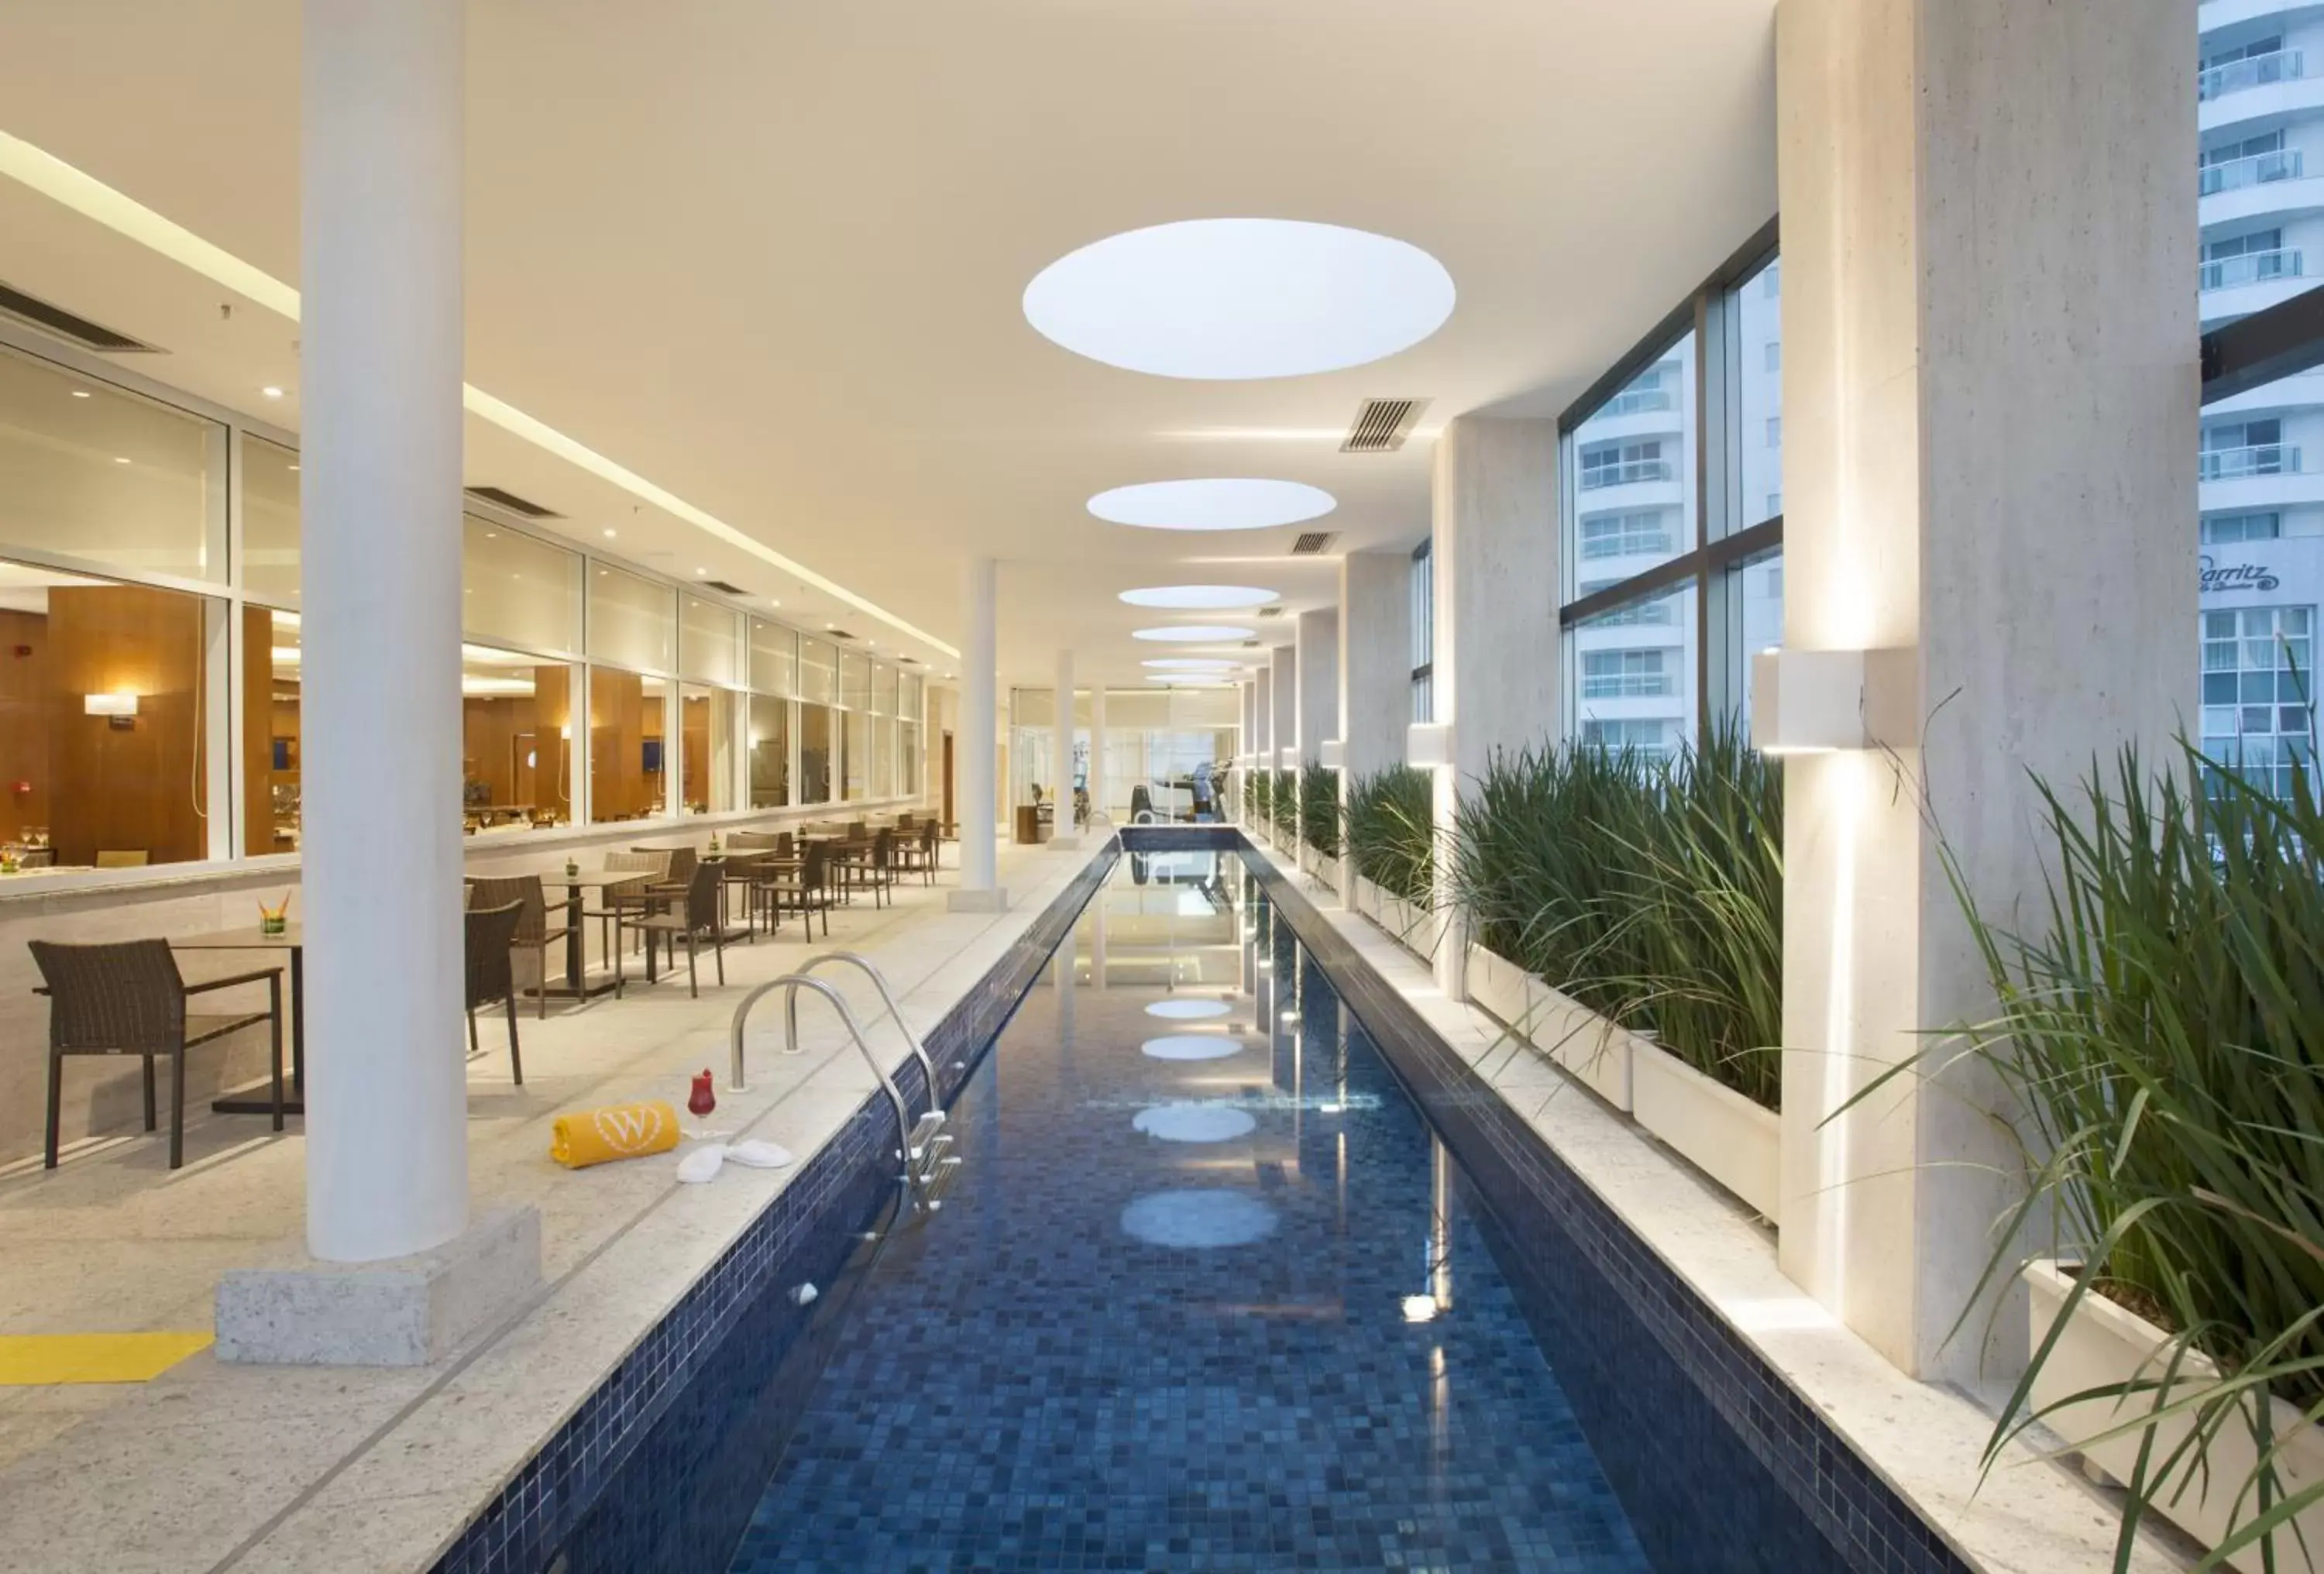 Swimming Pool in Windsor Brasilia Hotel